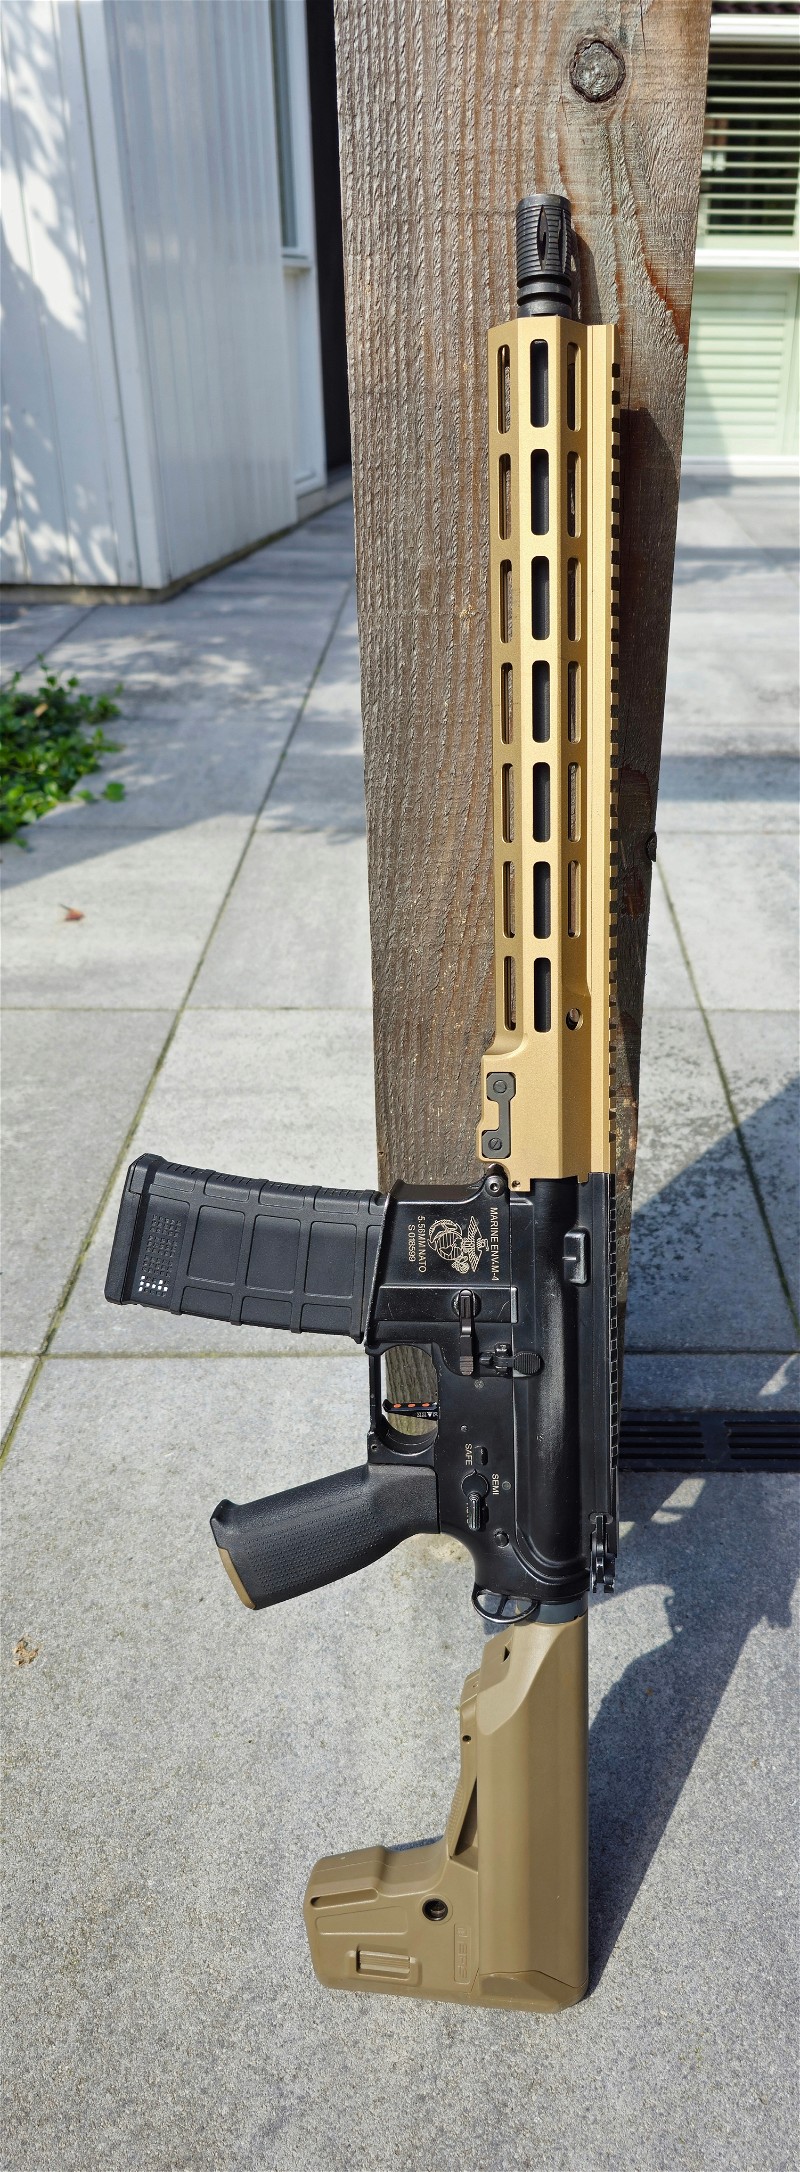 Image 1 for Specna Arms URGI